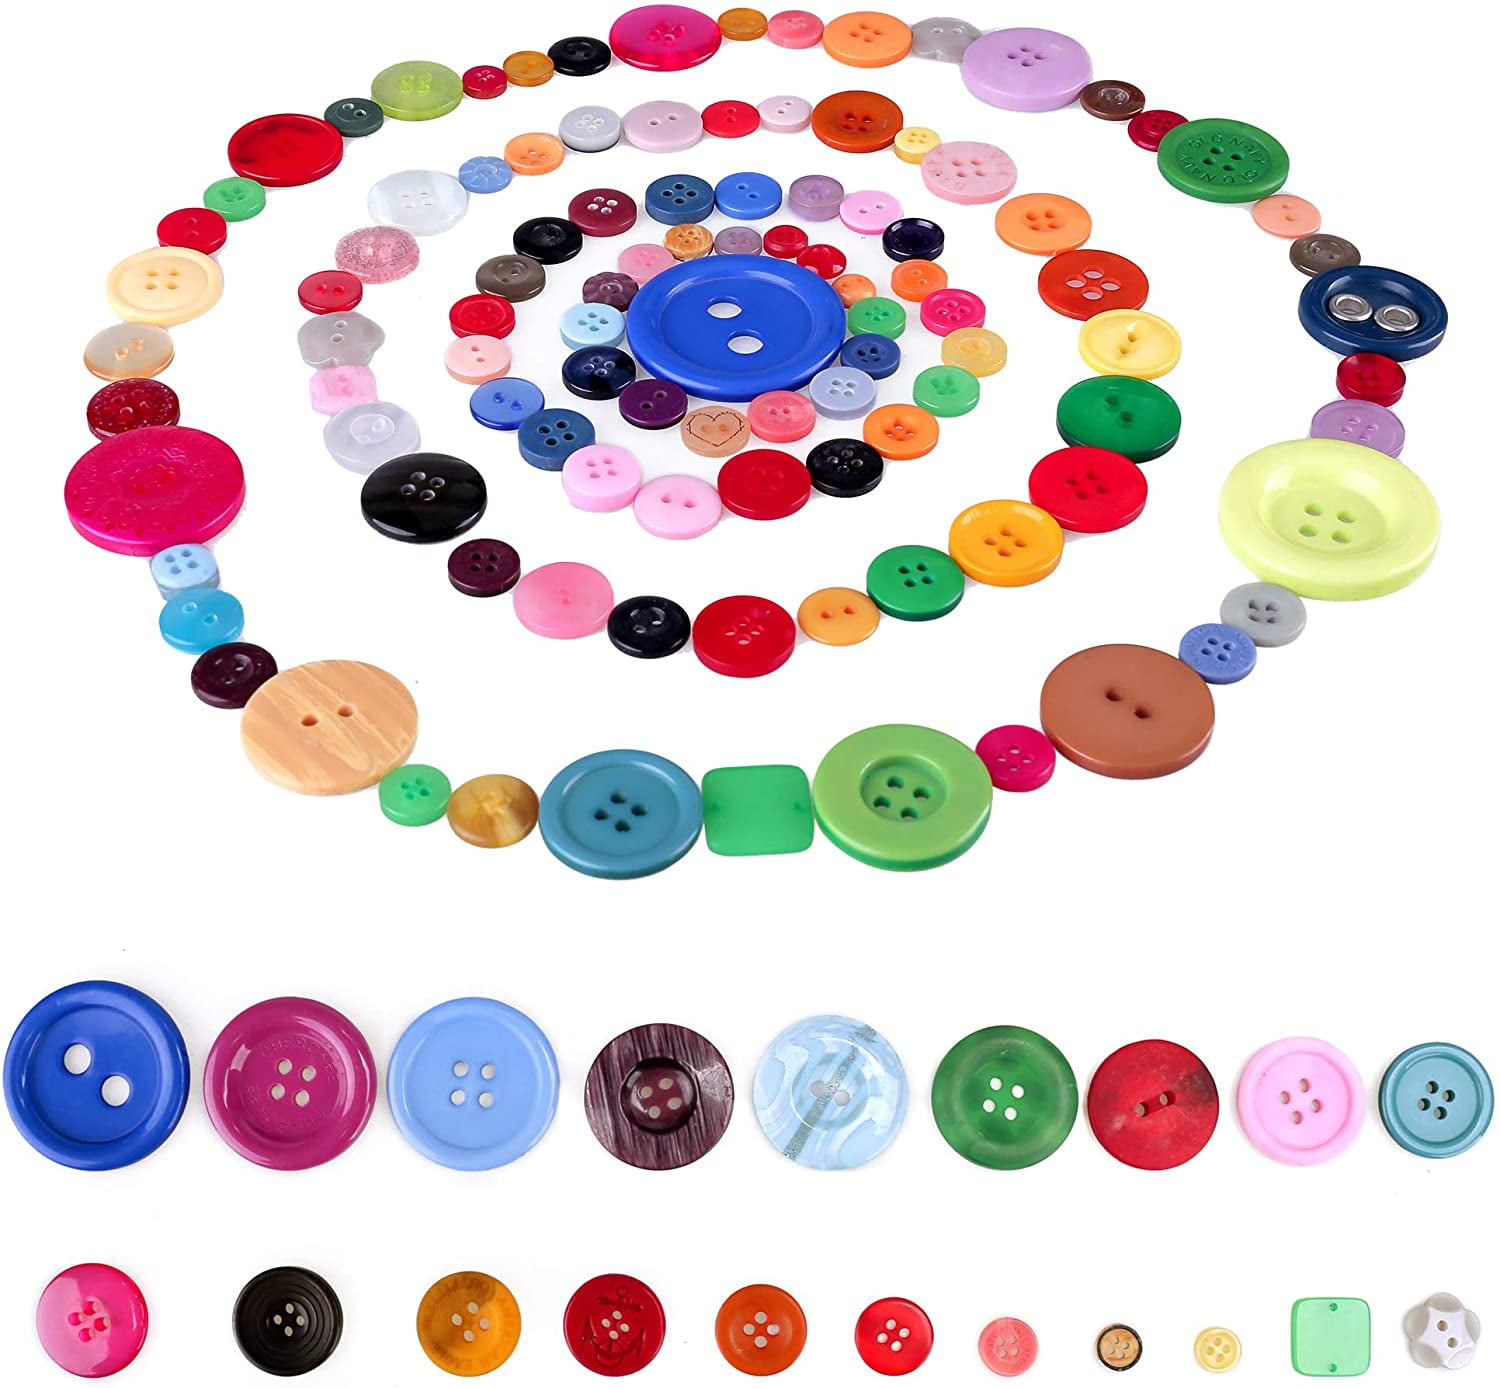  TEHAUX 1 Set Color Resin Button Manual Button Resin Sewing  Buttons 4 Hole Resin Buttons Colored Resin Buttons Small Buttons Kids  Crafts Clothes DIY Buttons Flat Shoes Child Replace